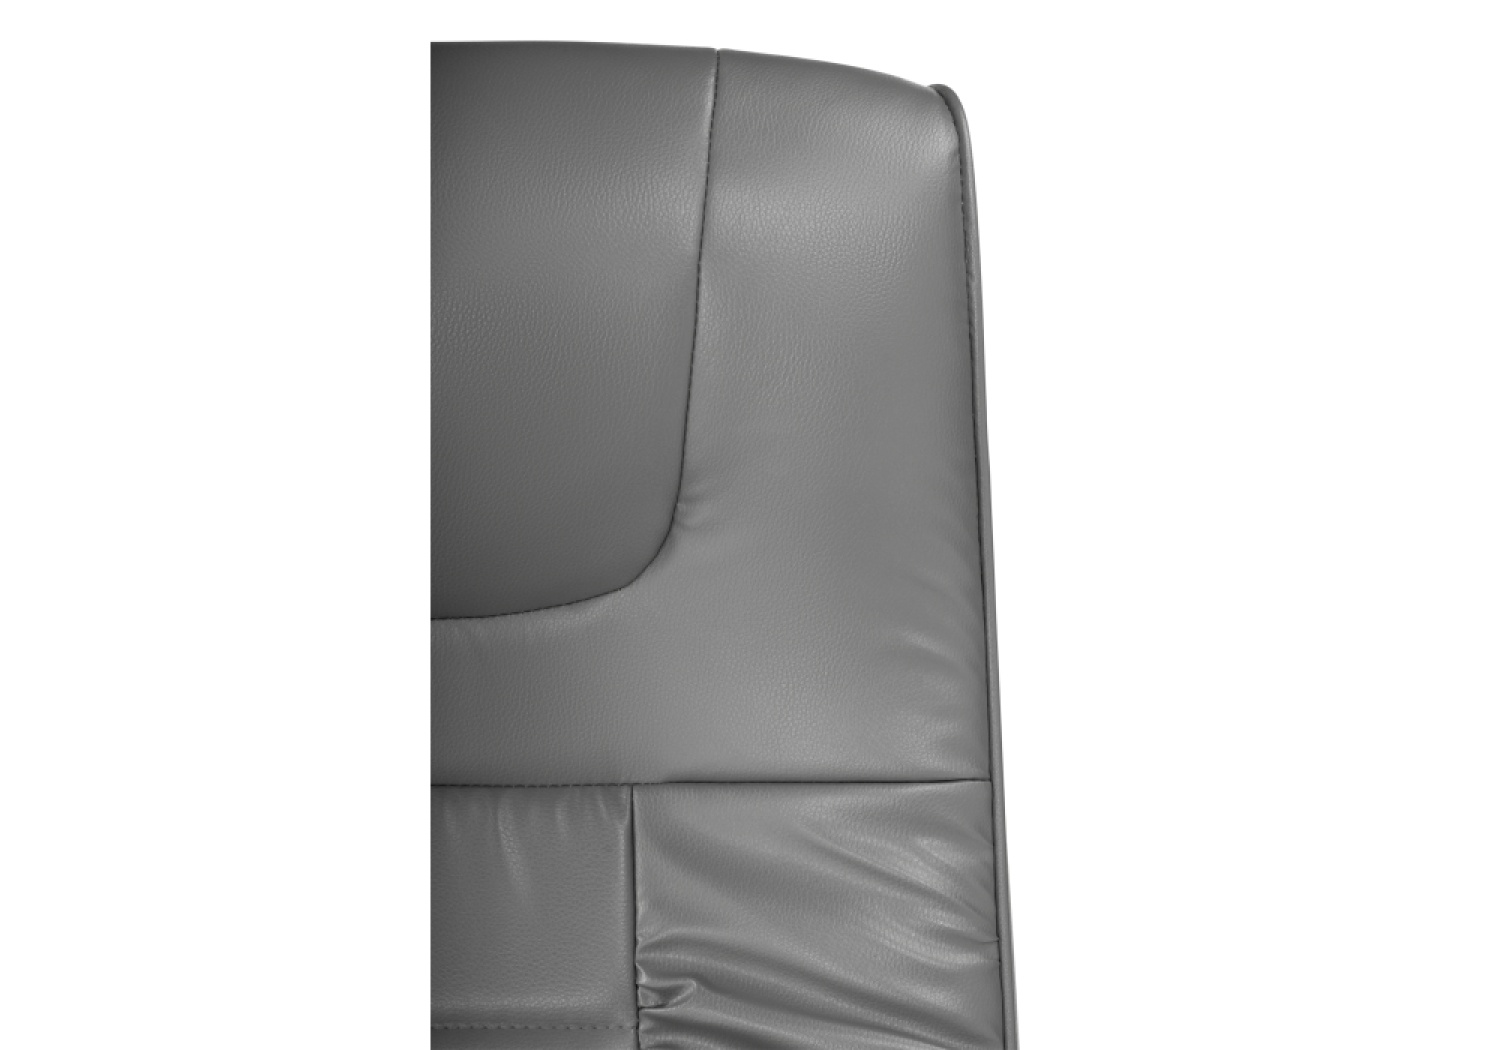 Офисное кресло Longer light gray